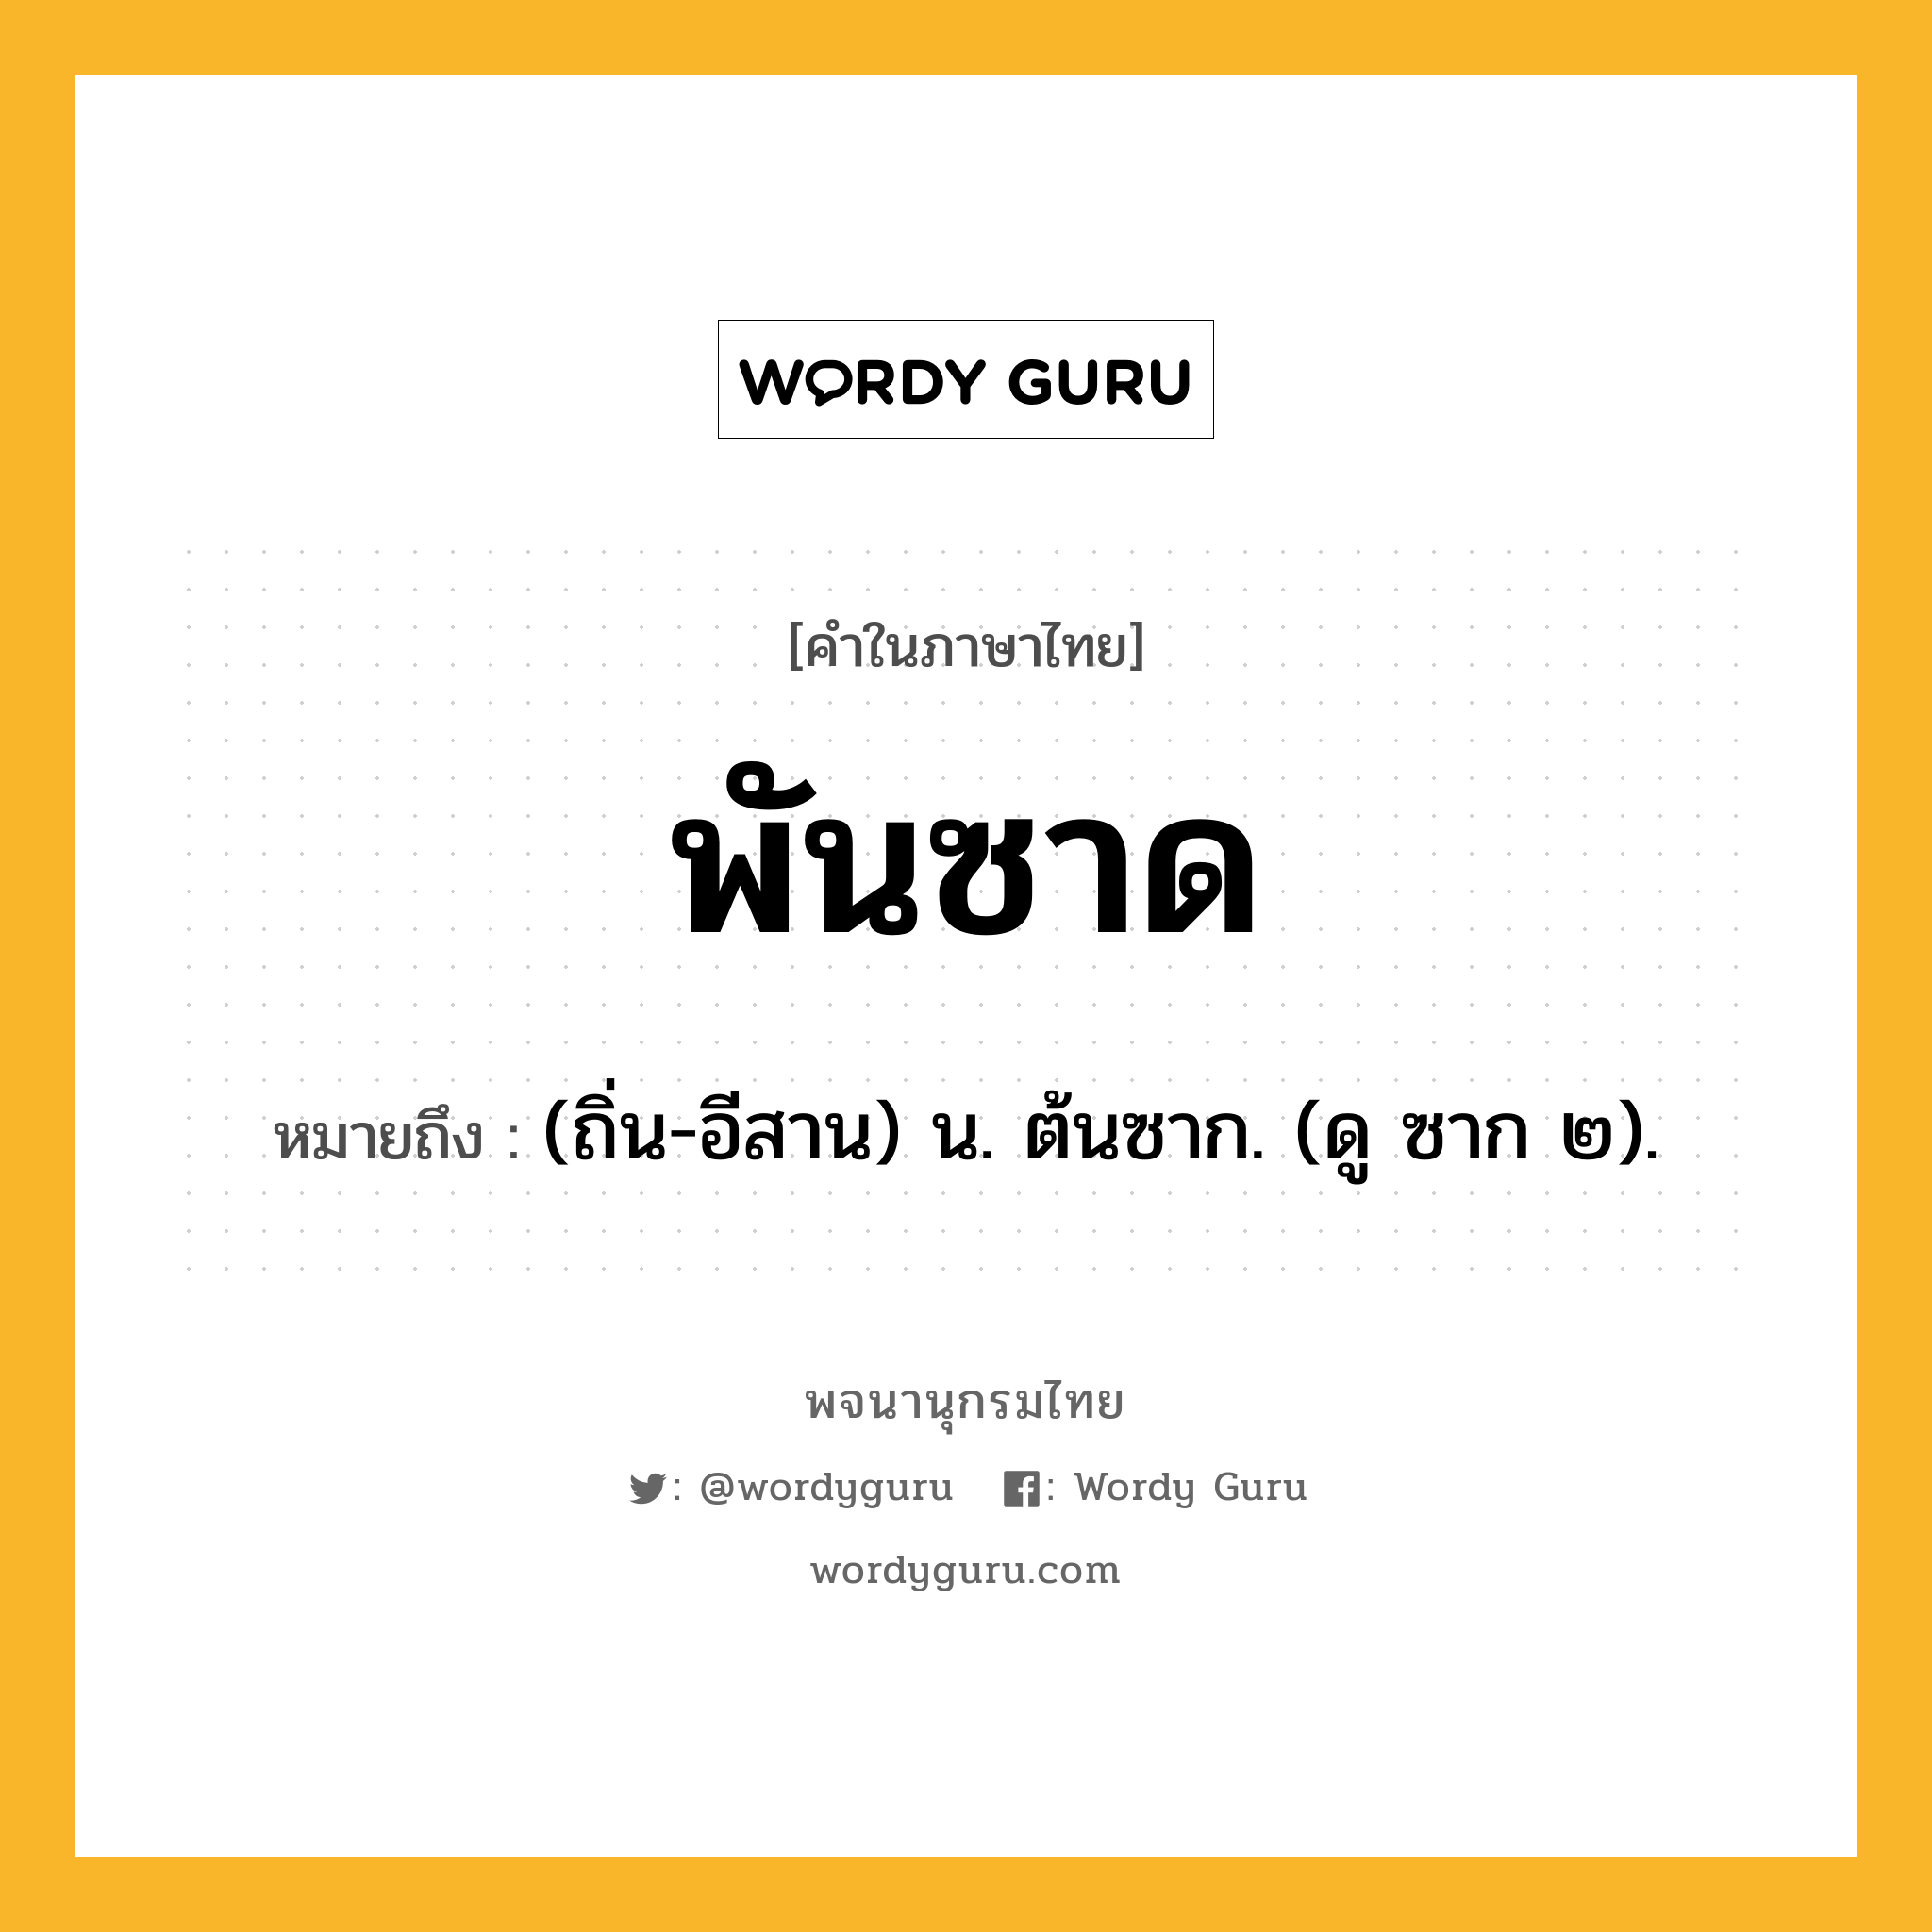 พันซาด ความหมาย หมายถึงอะไร?, คำในภาษาไทย พันซาด หมายถึง (ถิ่น-อีสาน) น. ต้นซาก. (ดู ซาก ๒).